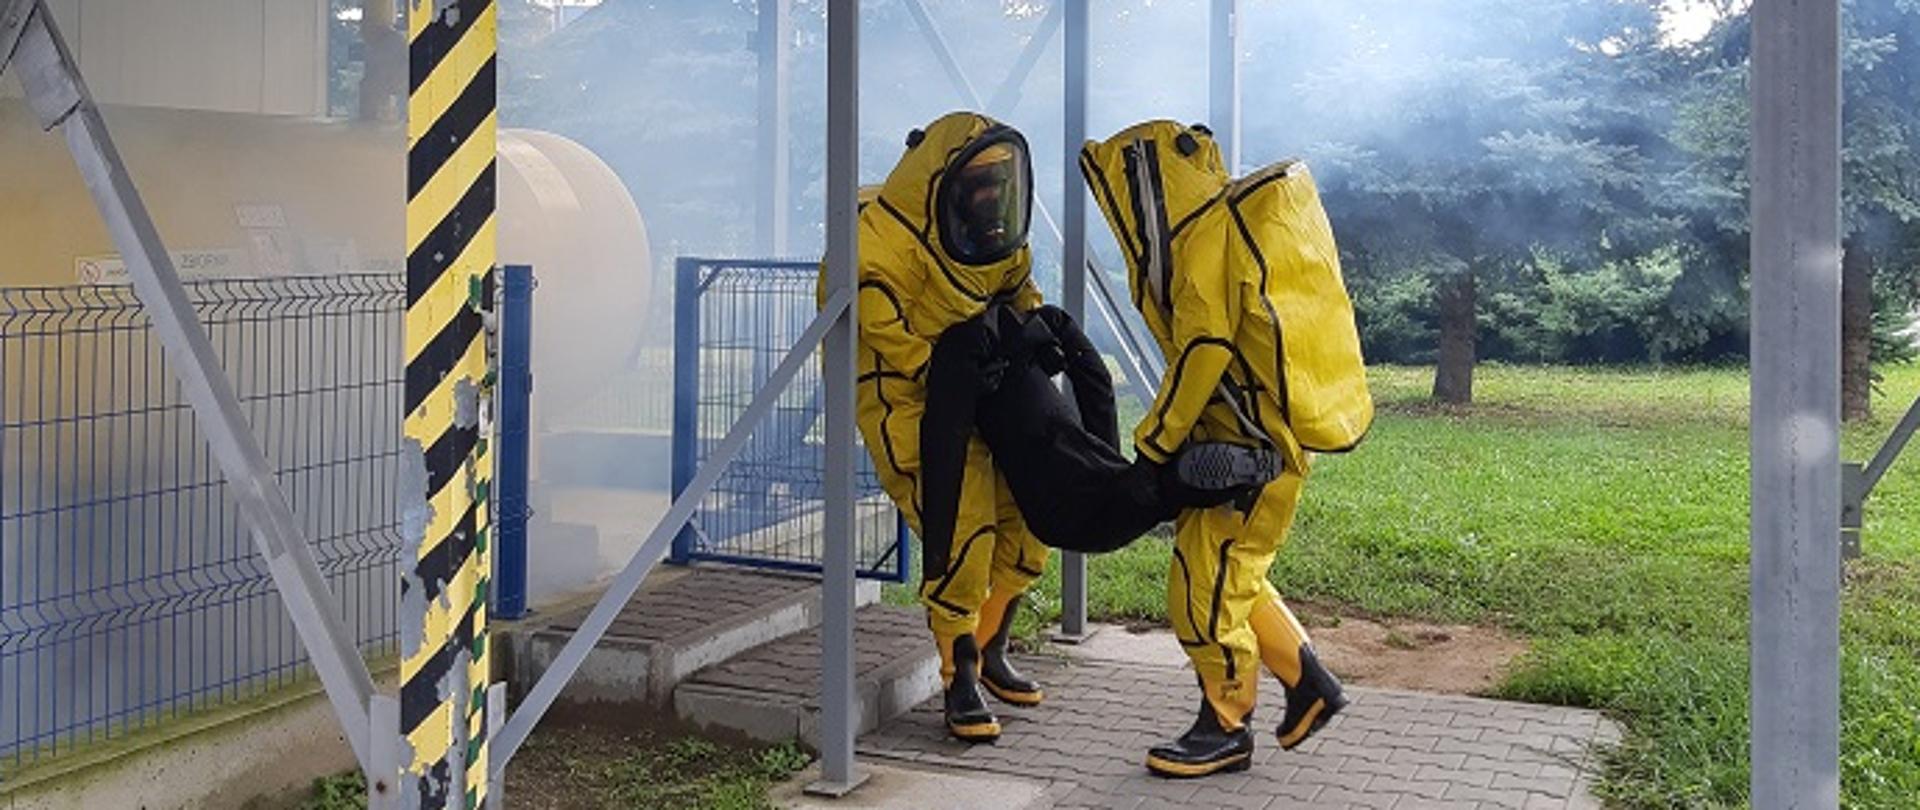 Na zdjęciu widzimy strażaków w ubraniach gazoszczelnych ewakuujących poszkodowanego (manekina) z terenu zagrożonego. W tle widzimy instalacje chemiczną.